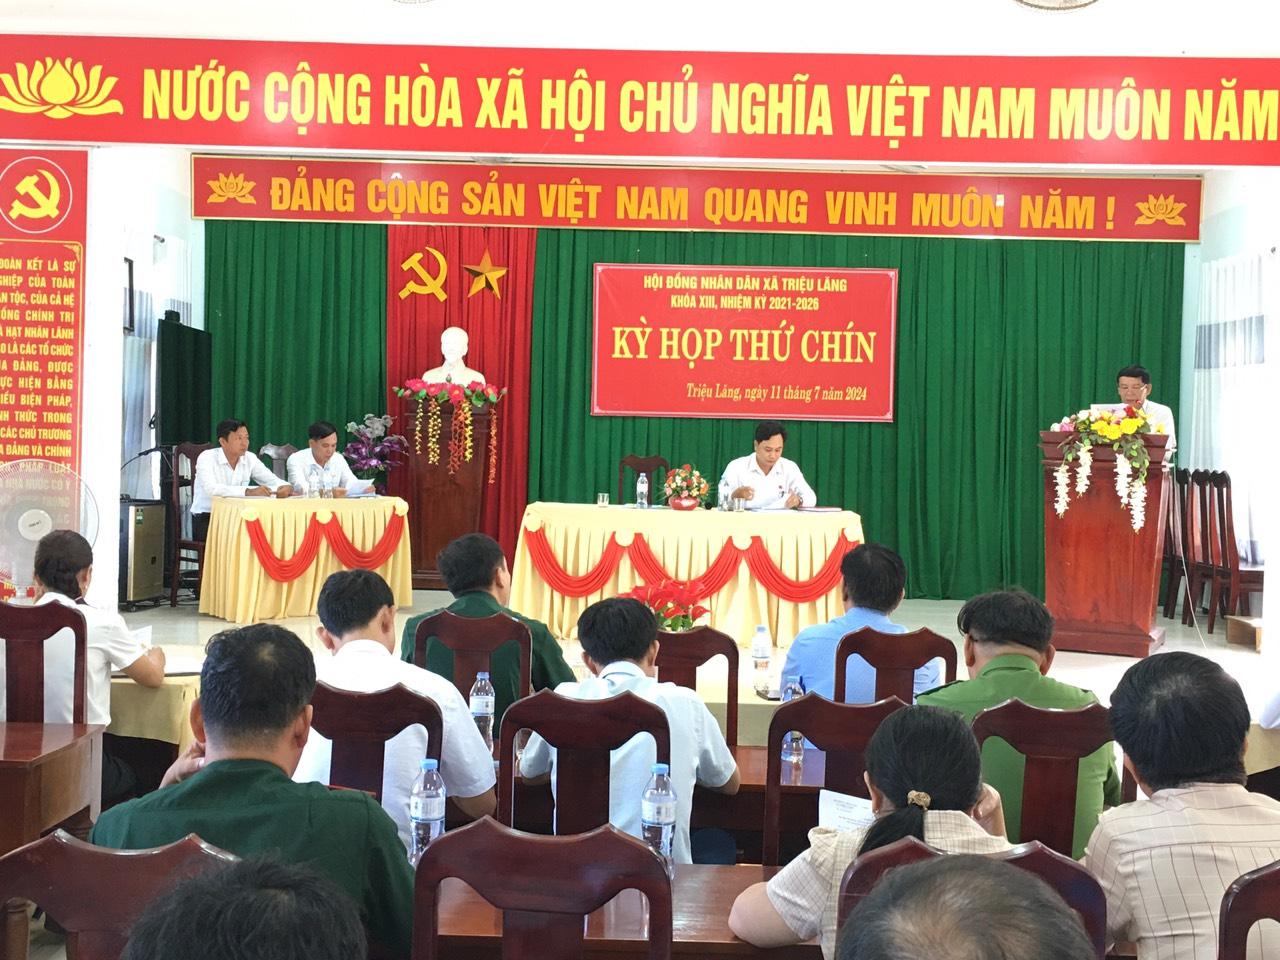 HĐND xã Triệu Lăng tổ chức kỳ họp thứ Chín khóa XIII, nhiệm kỳ 2021-2026